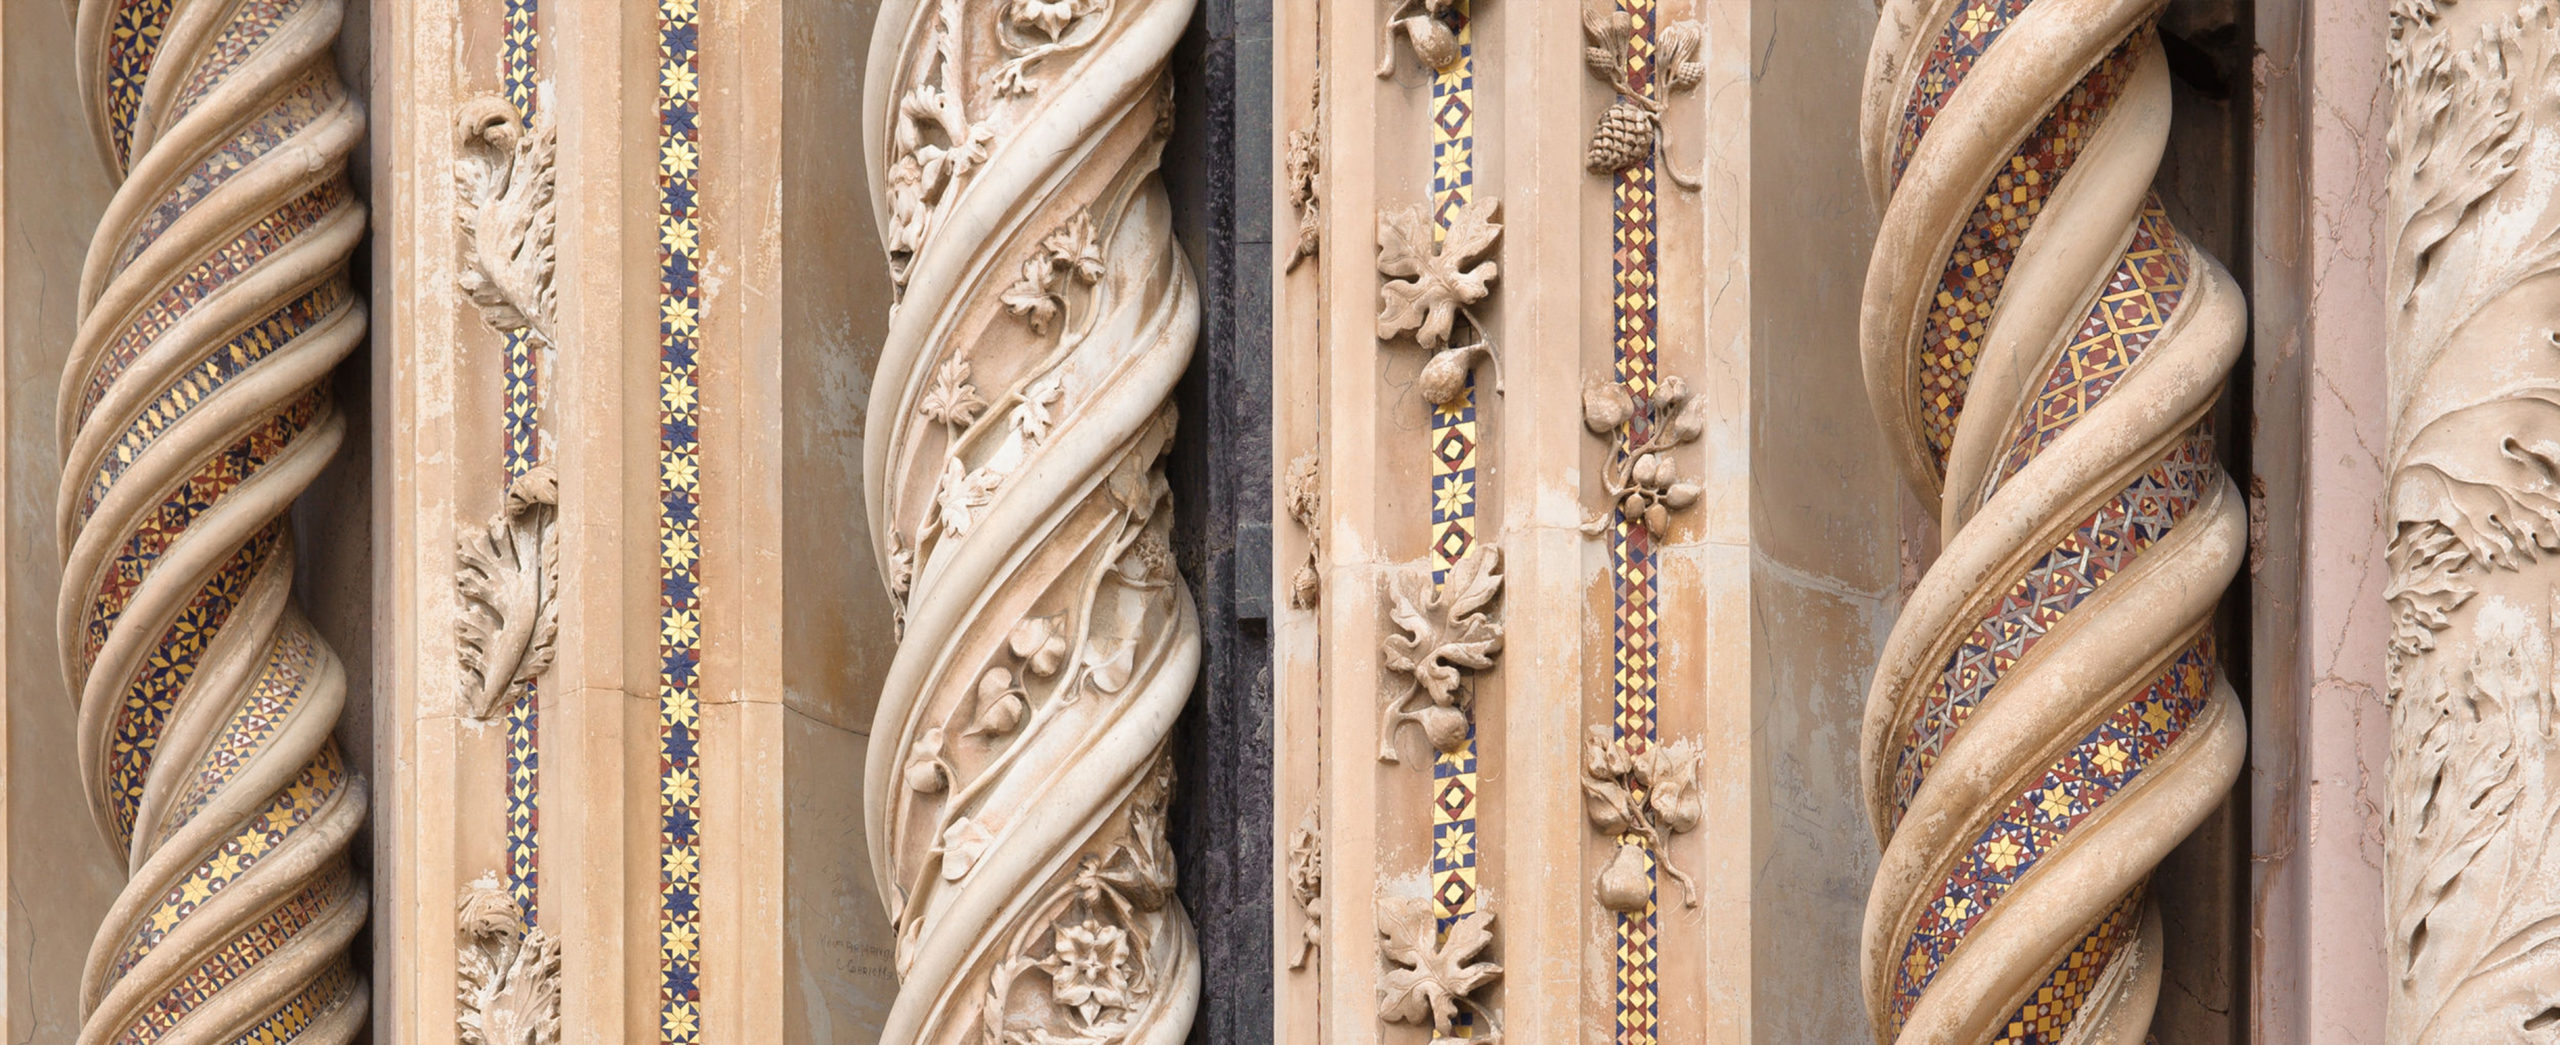 Orvieto - particolare delle colonnine del portale del Duomo